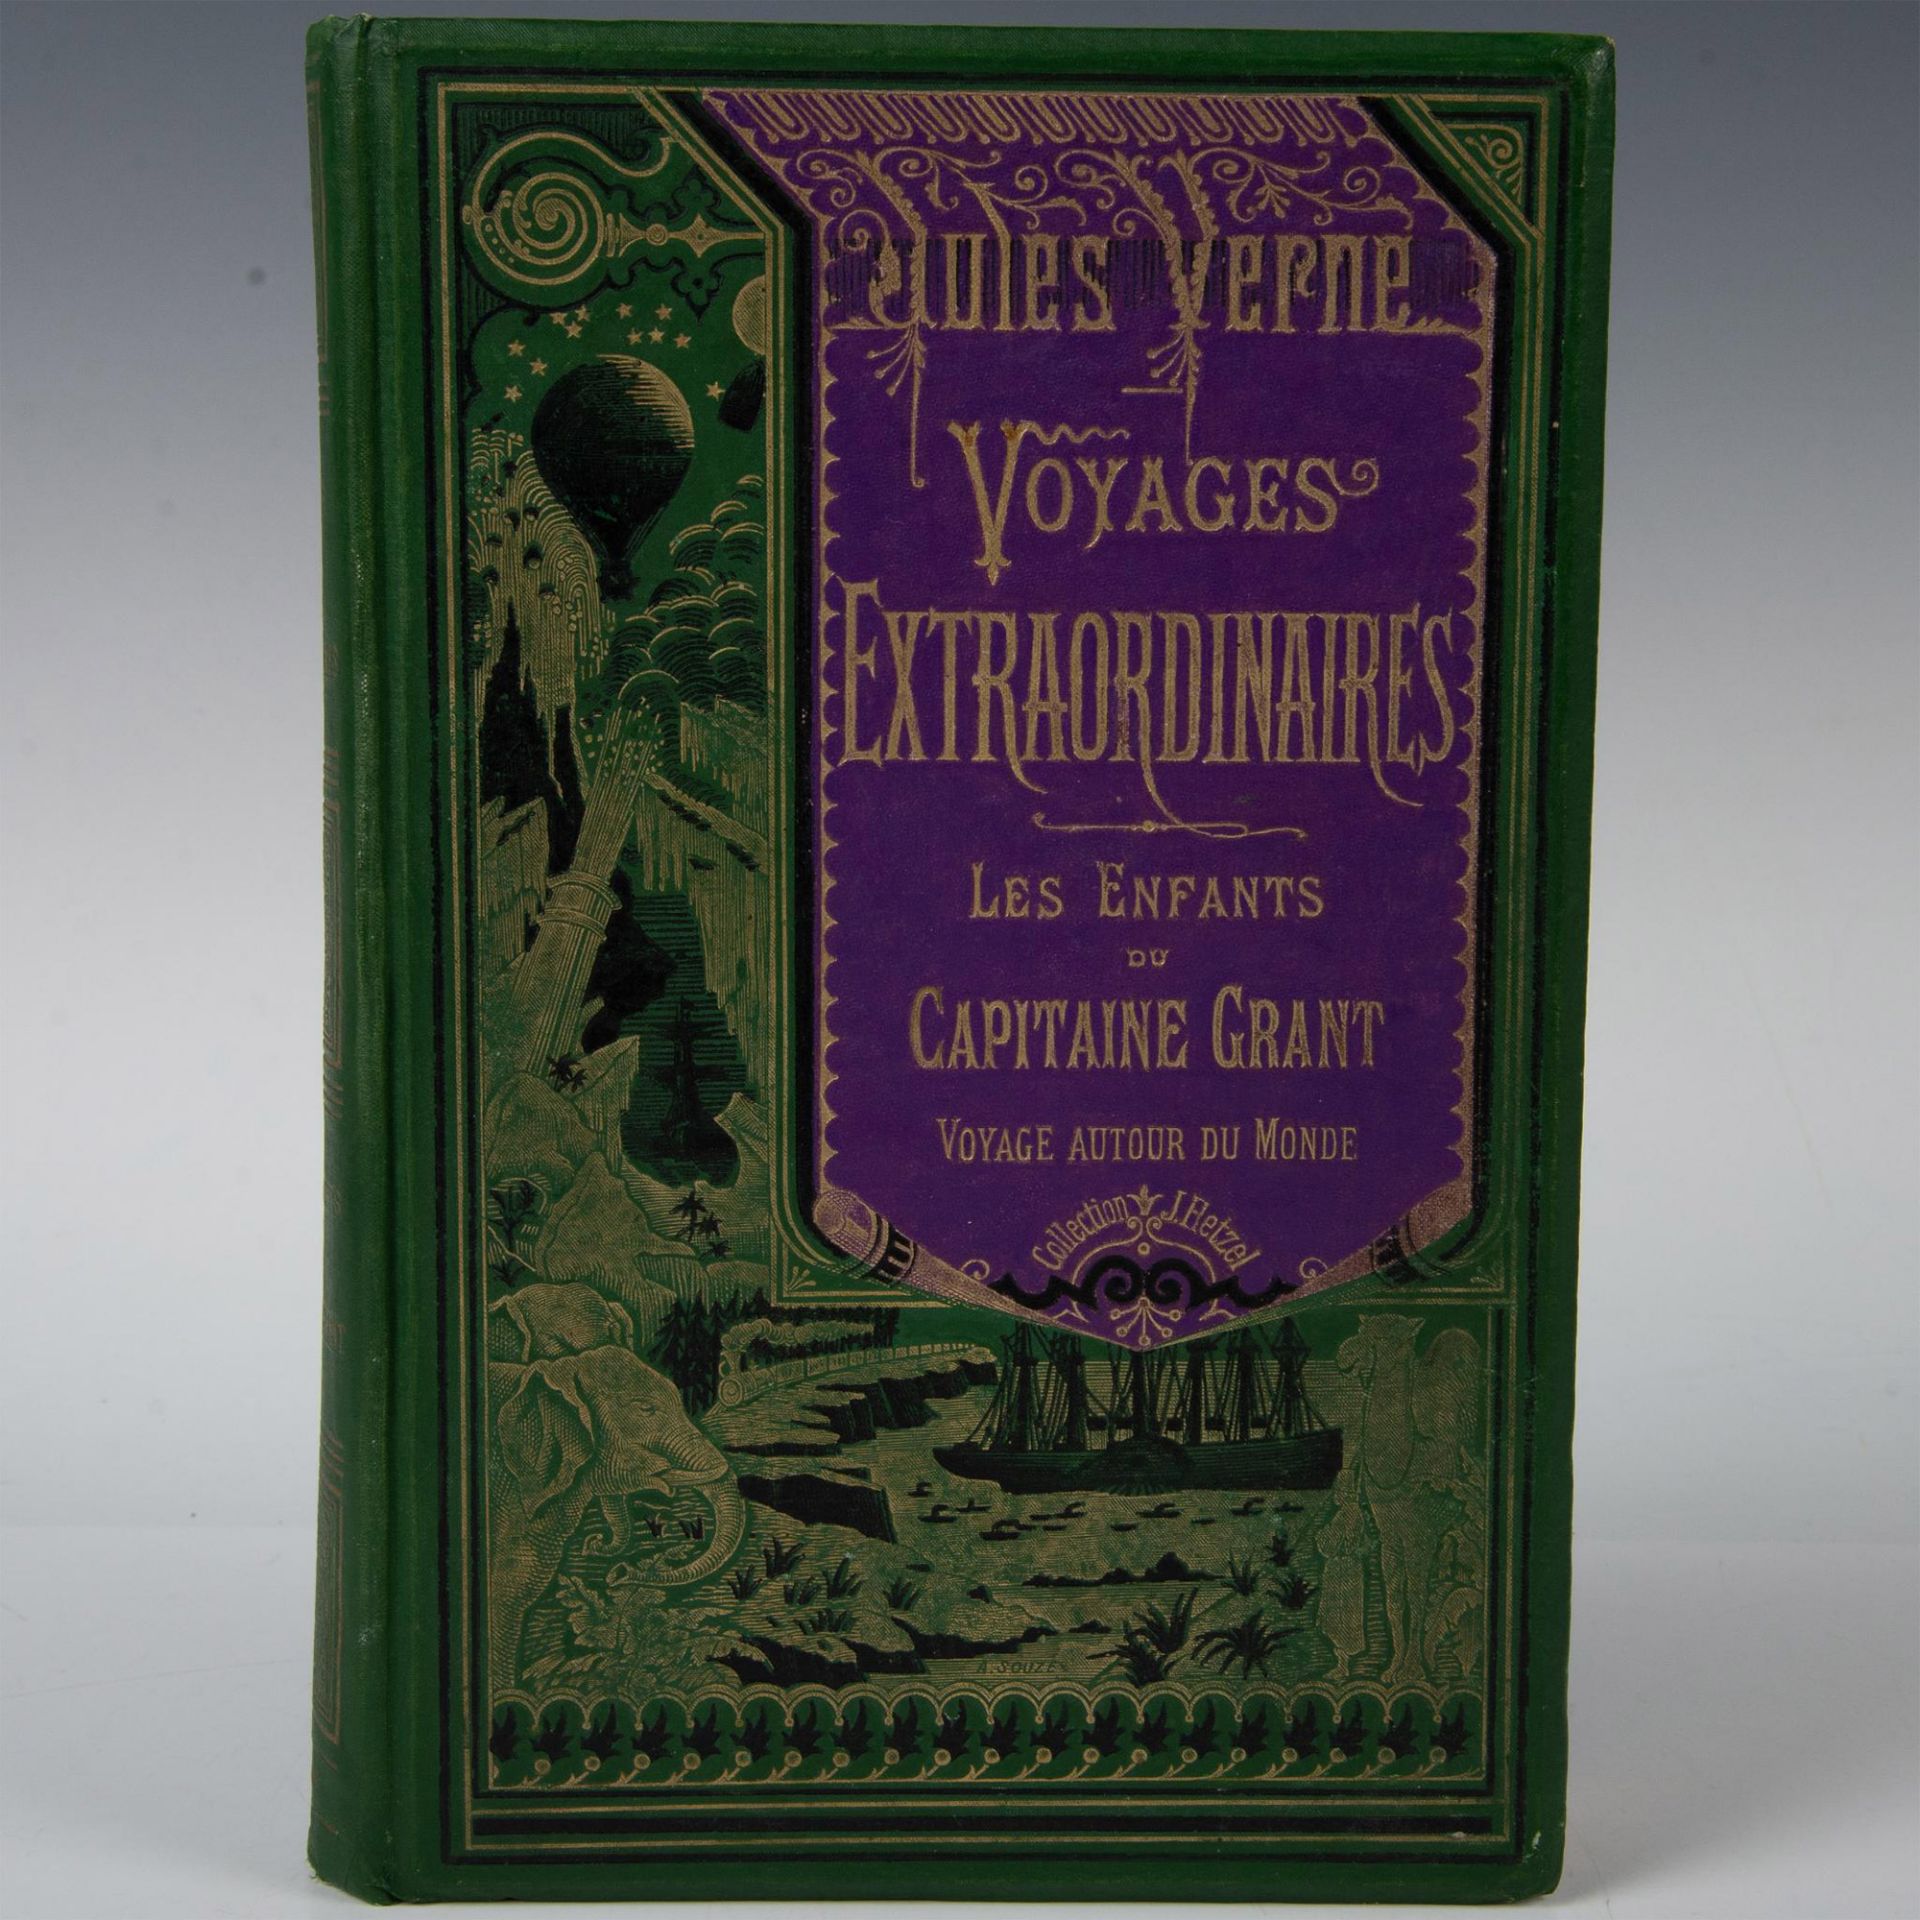 Jules Verne, Capitaine Grant, A La Banniere, Green & Purple